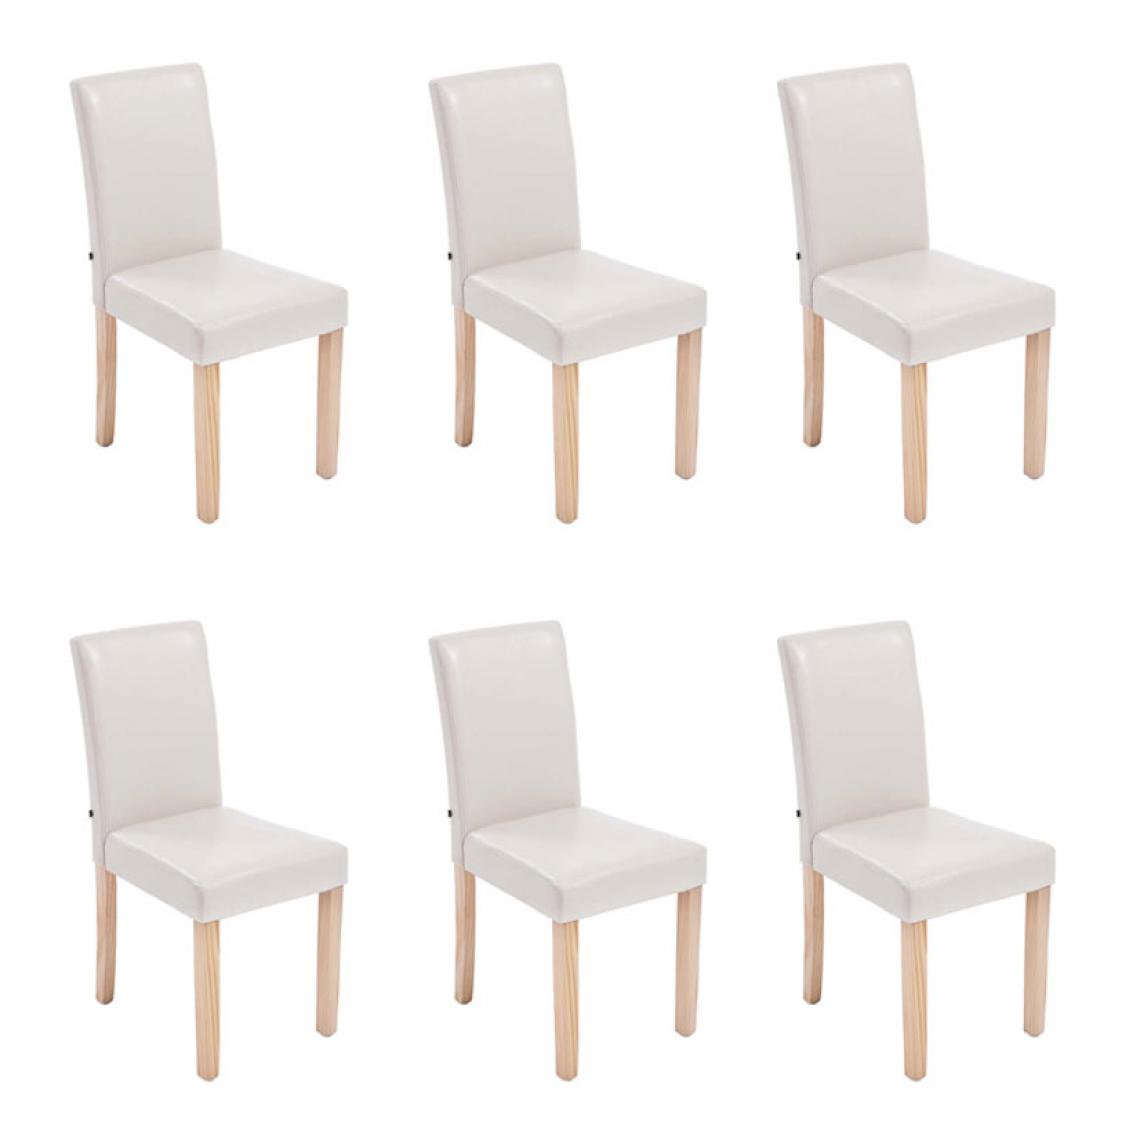 Icaverne - Distingué Lot de 6 chaises de salle à manger collection Rabat natura couleur crème - Chaises